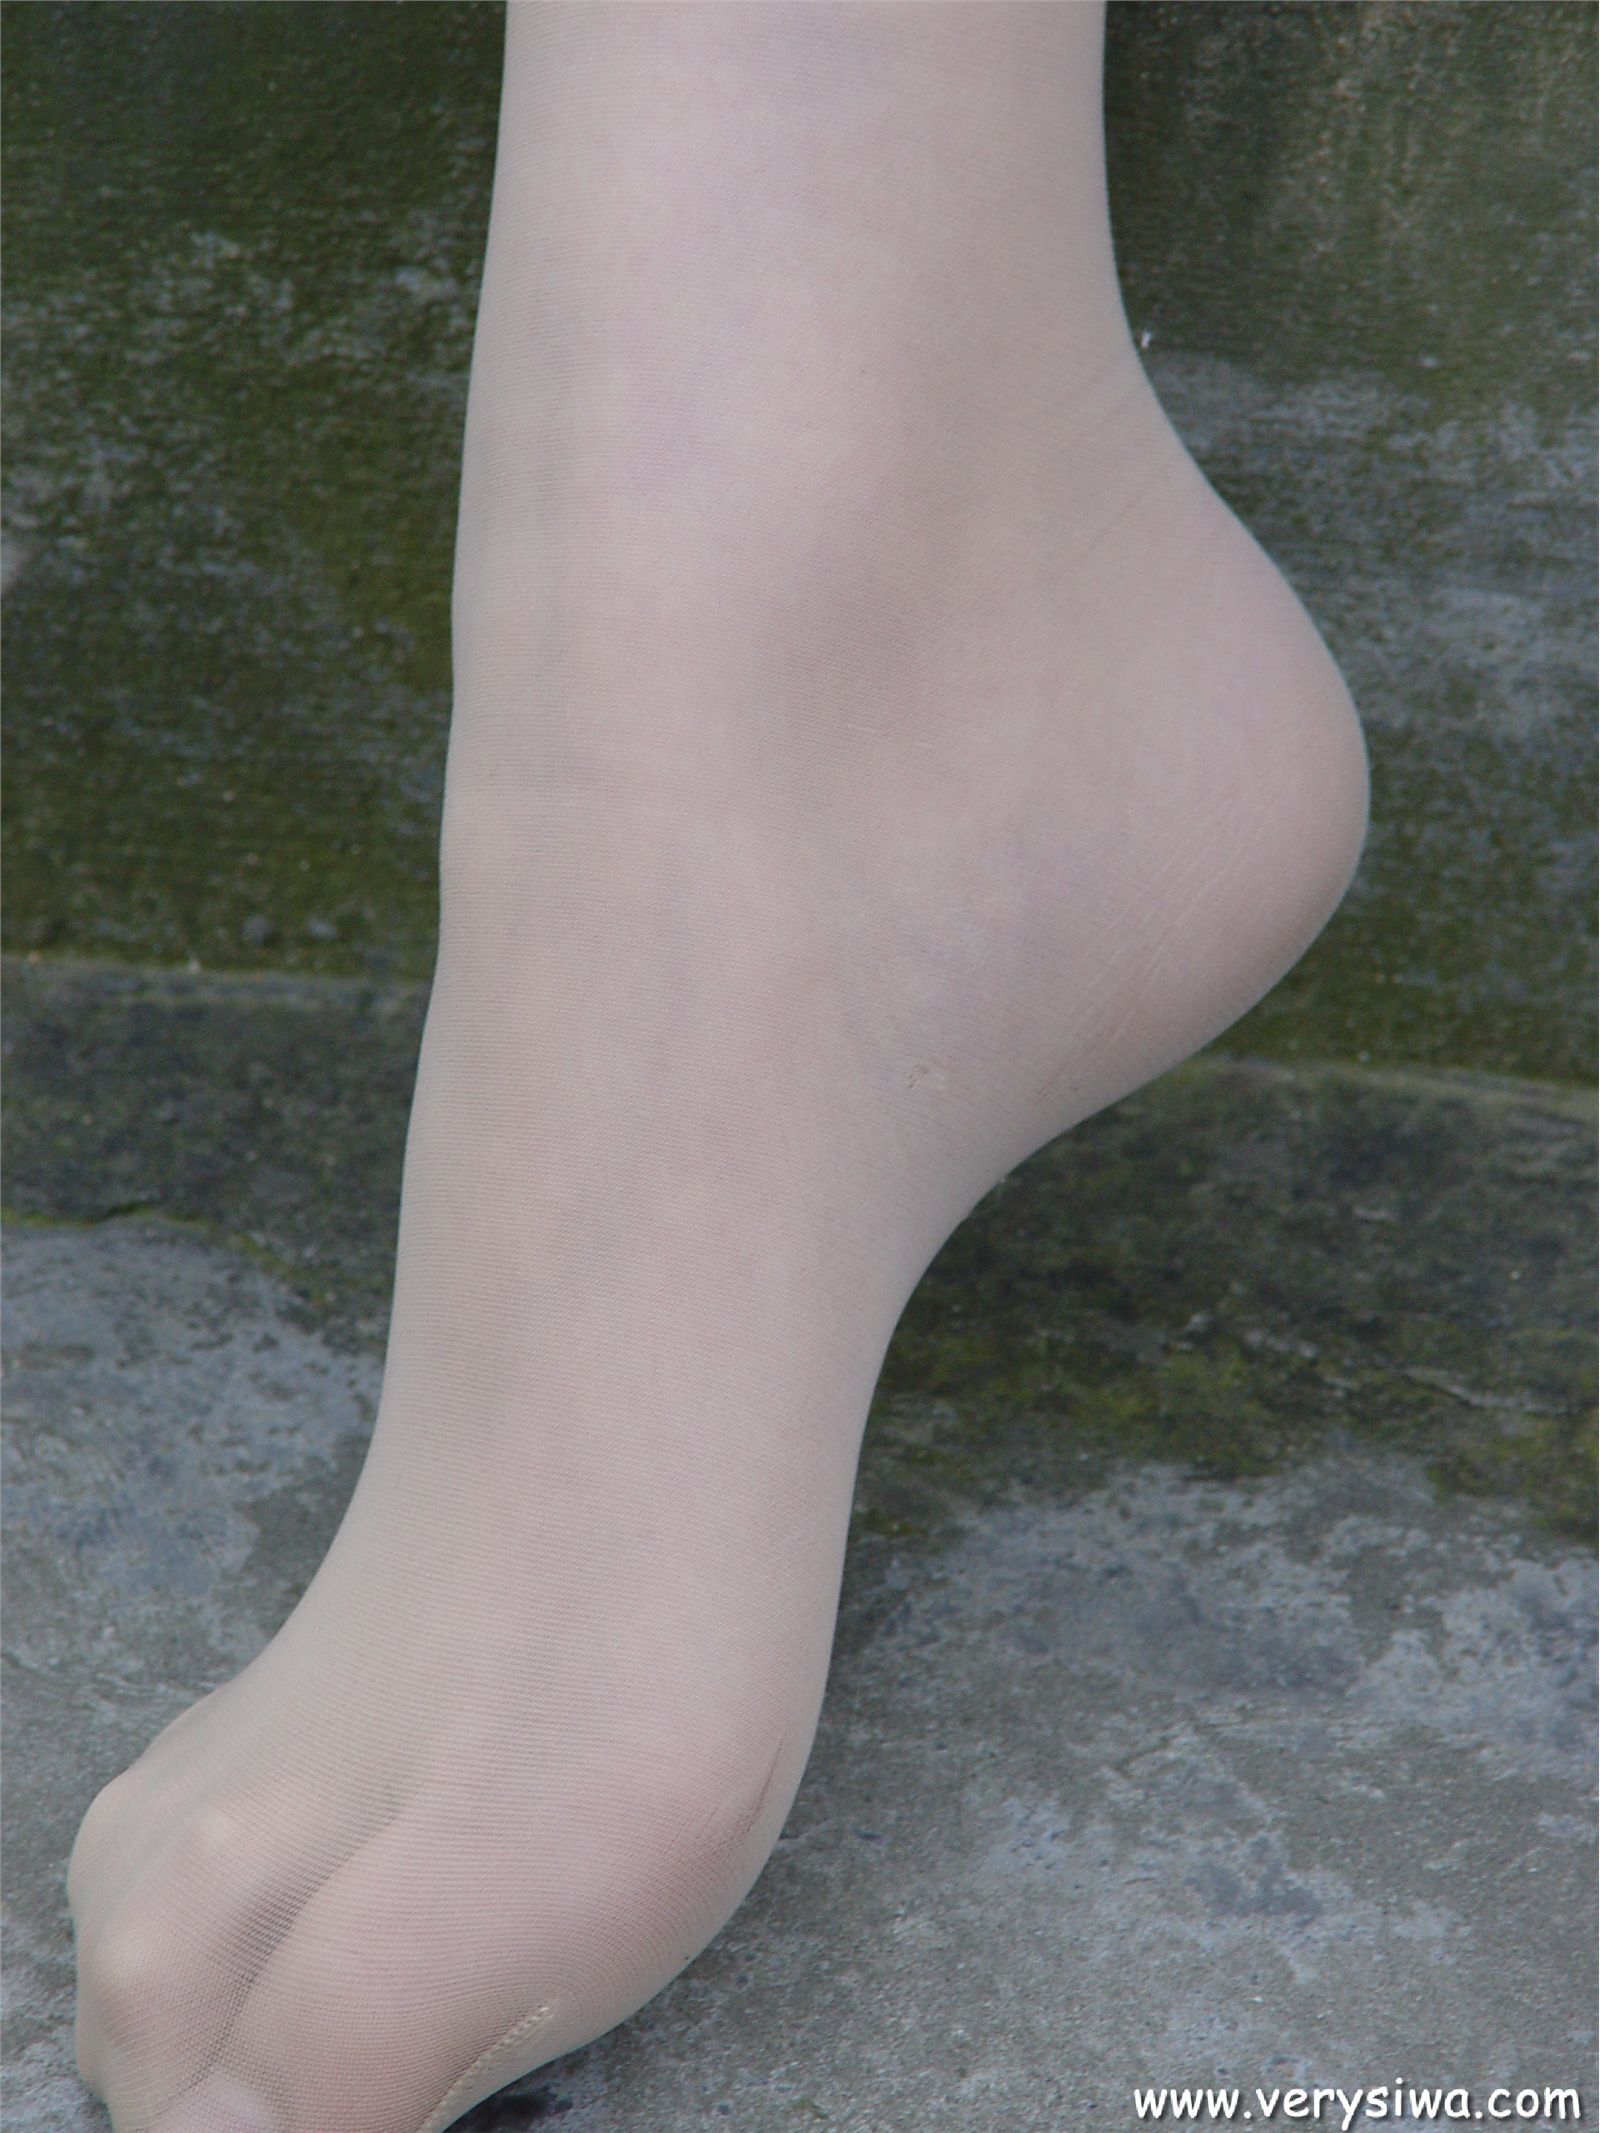 Zhonggaoyi P11 wild silk stockings foot show